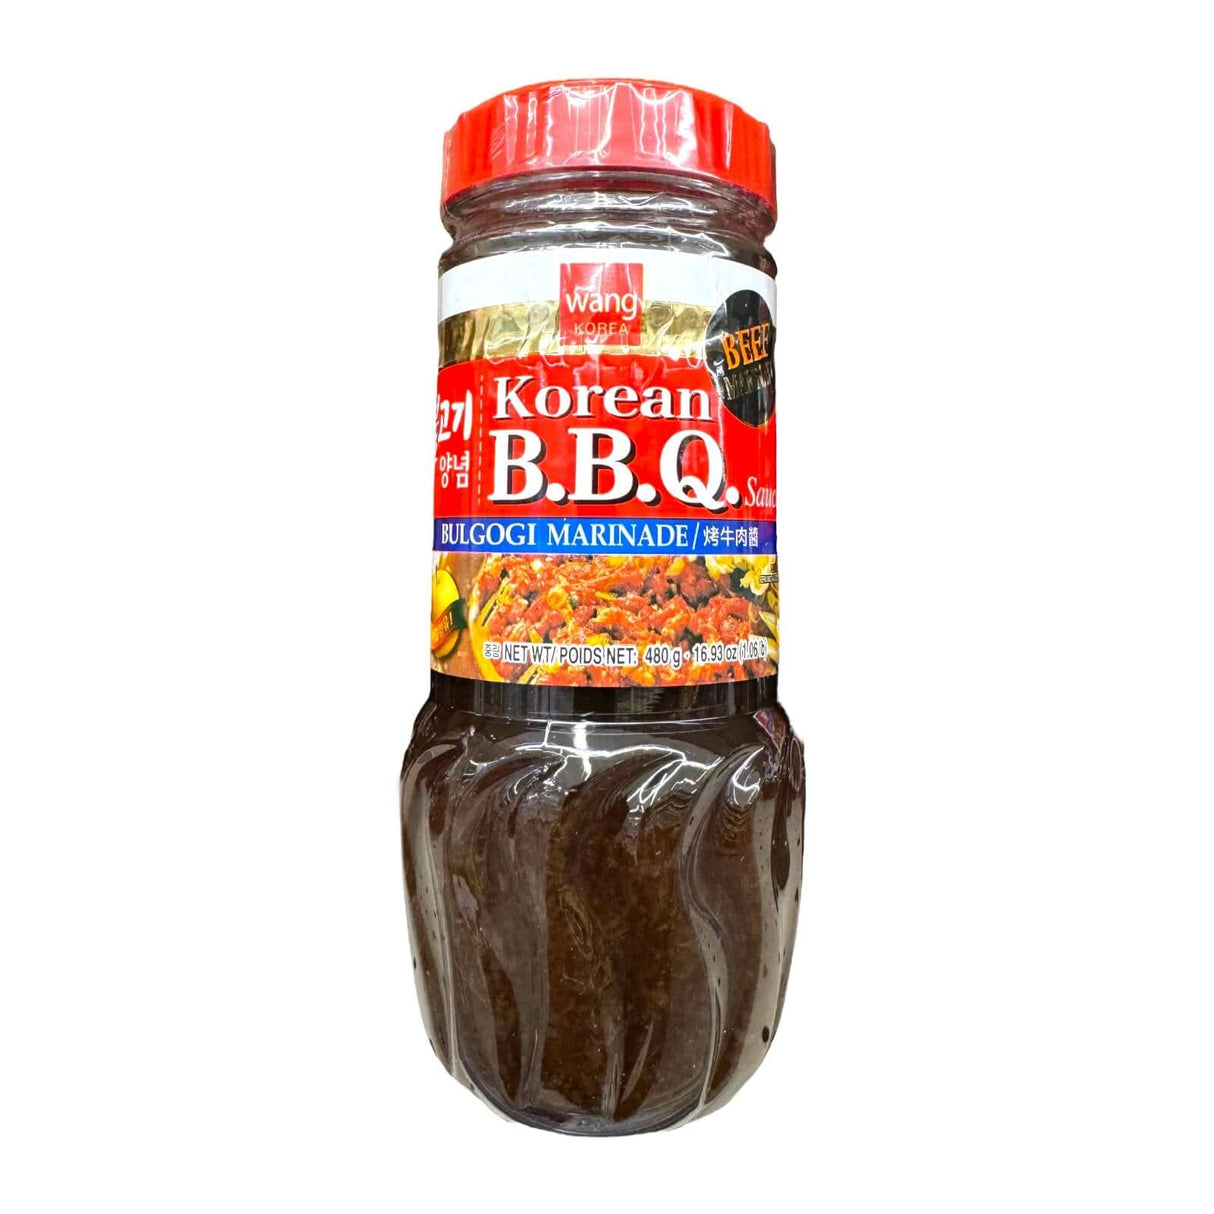 Wang Korea Korean B.B.. Sauce Bulgogi Marinade